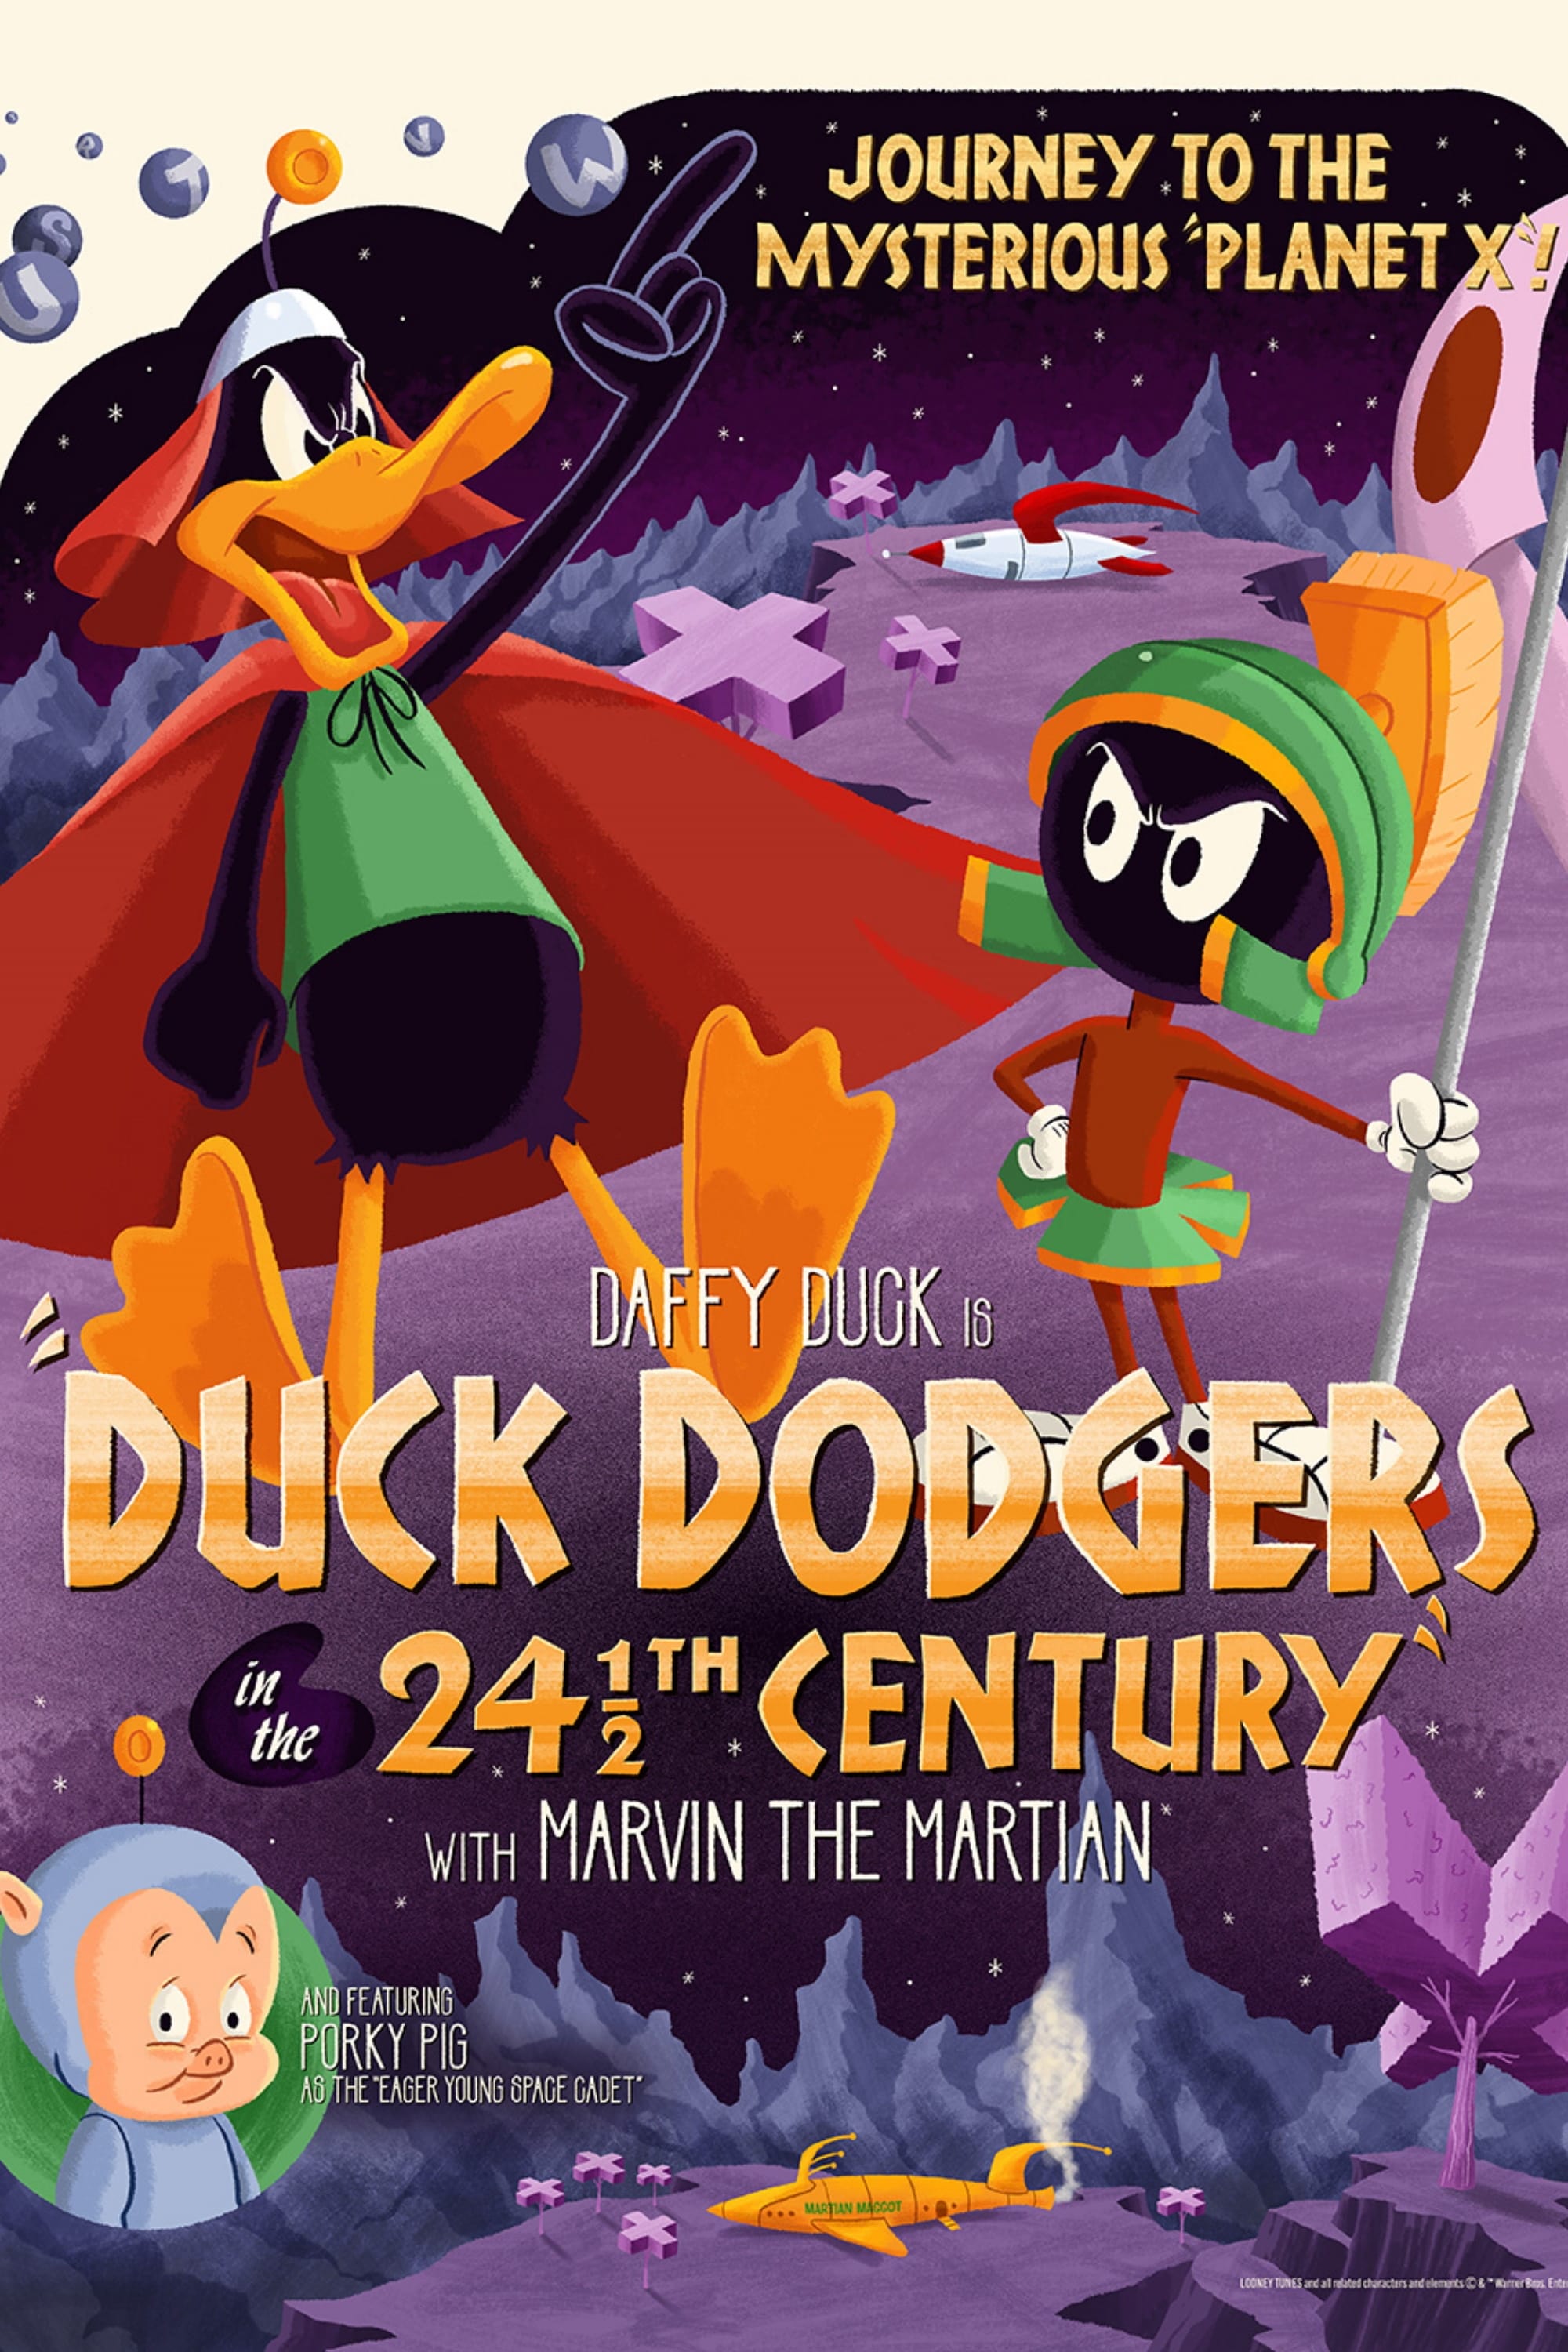 Duck Dodgers au XXIVème siècle et des poussières